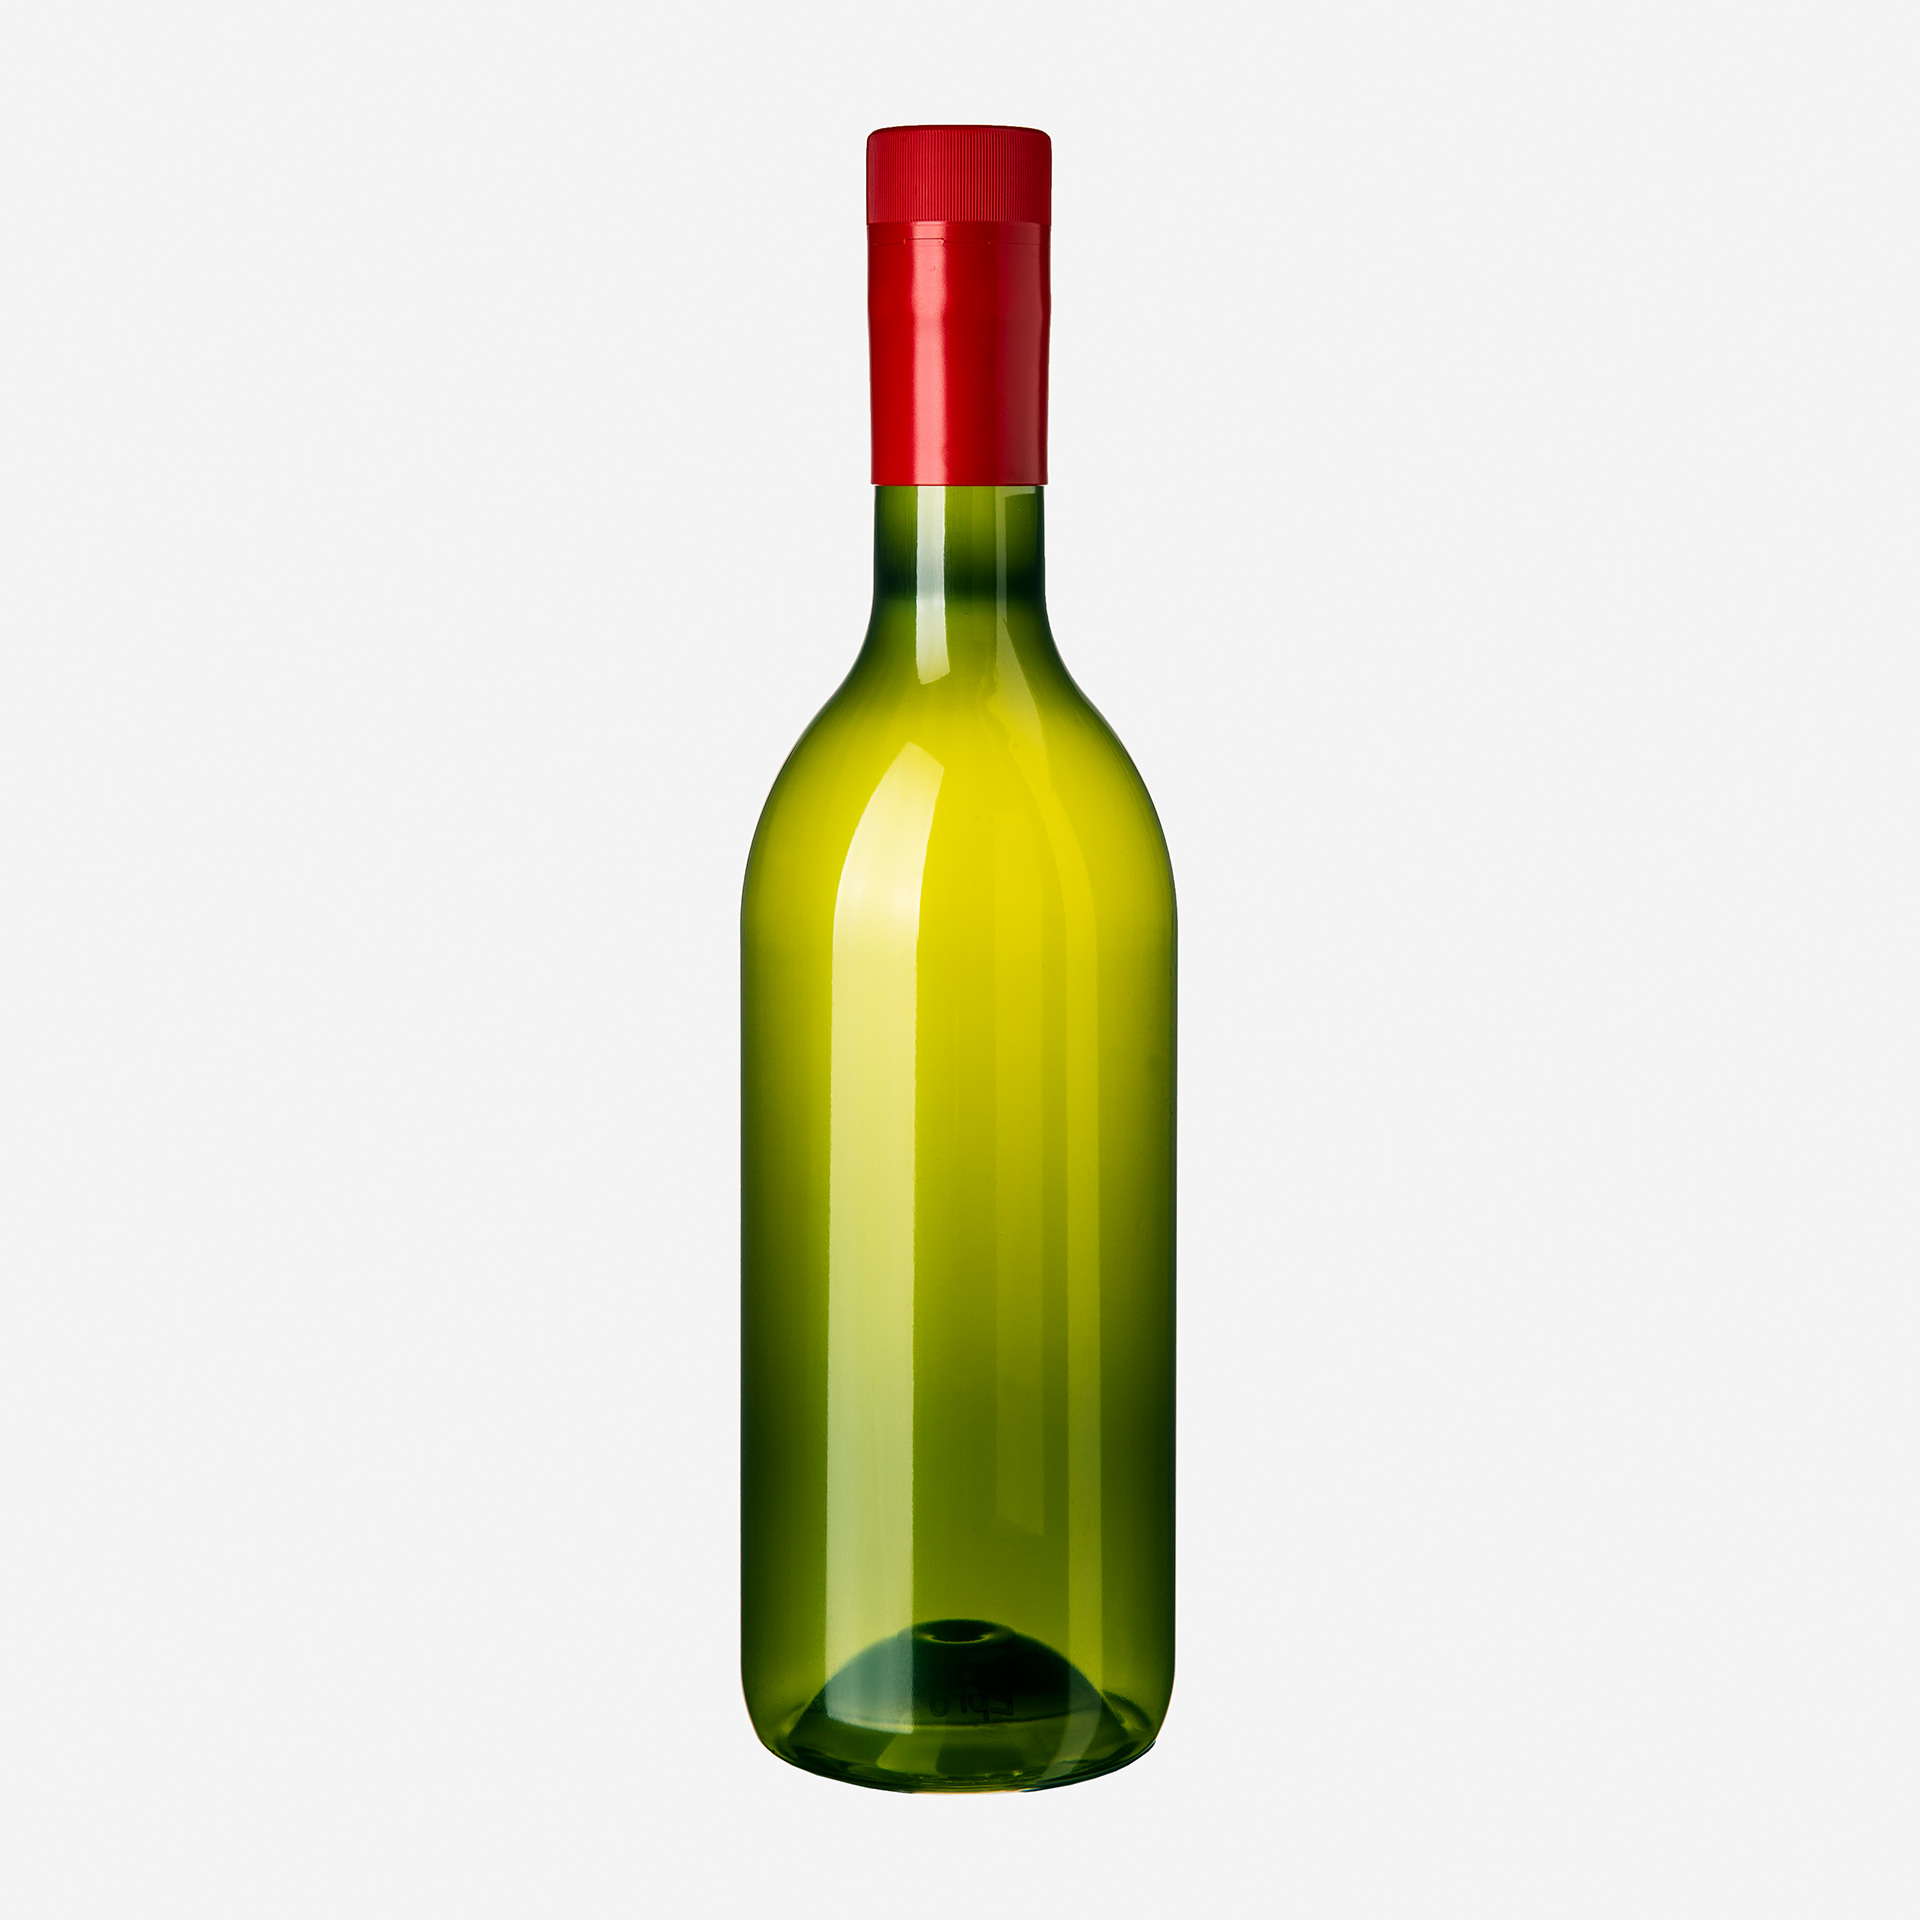 Gruene Weinflasche mit rotem Verschluss